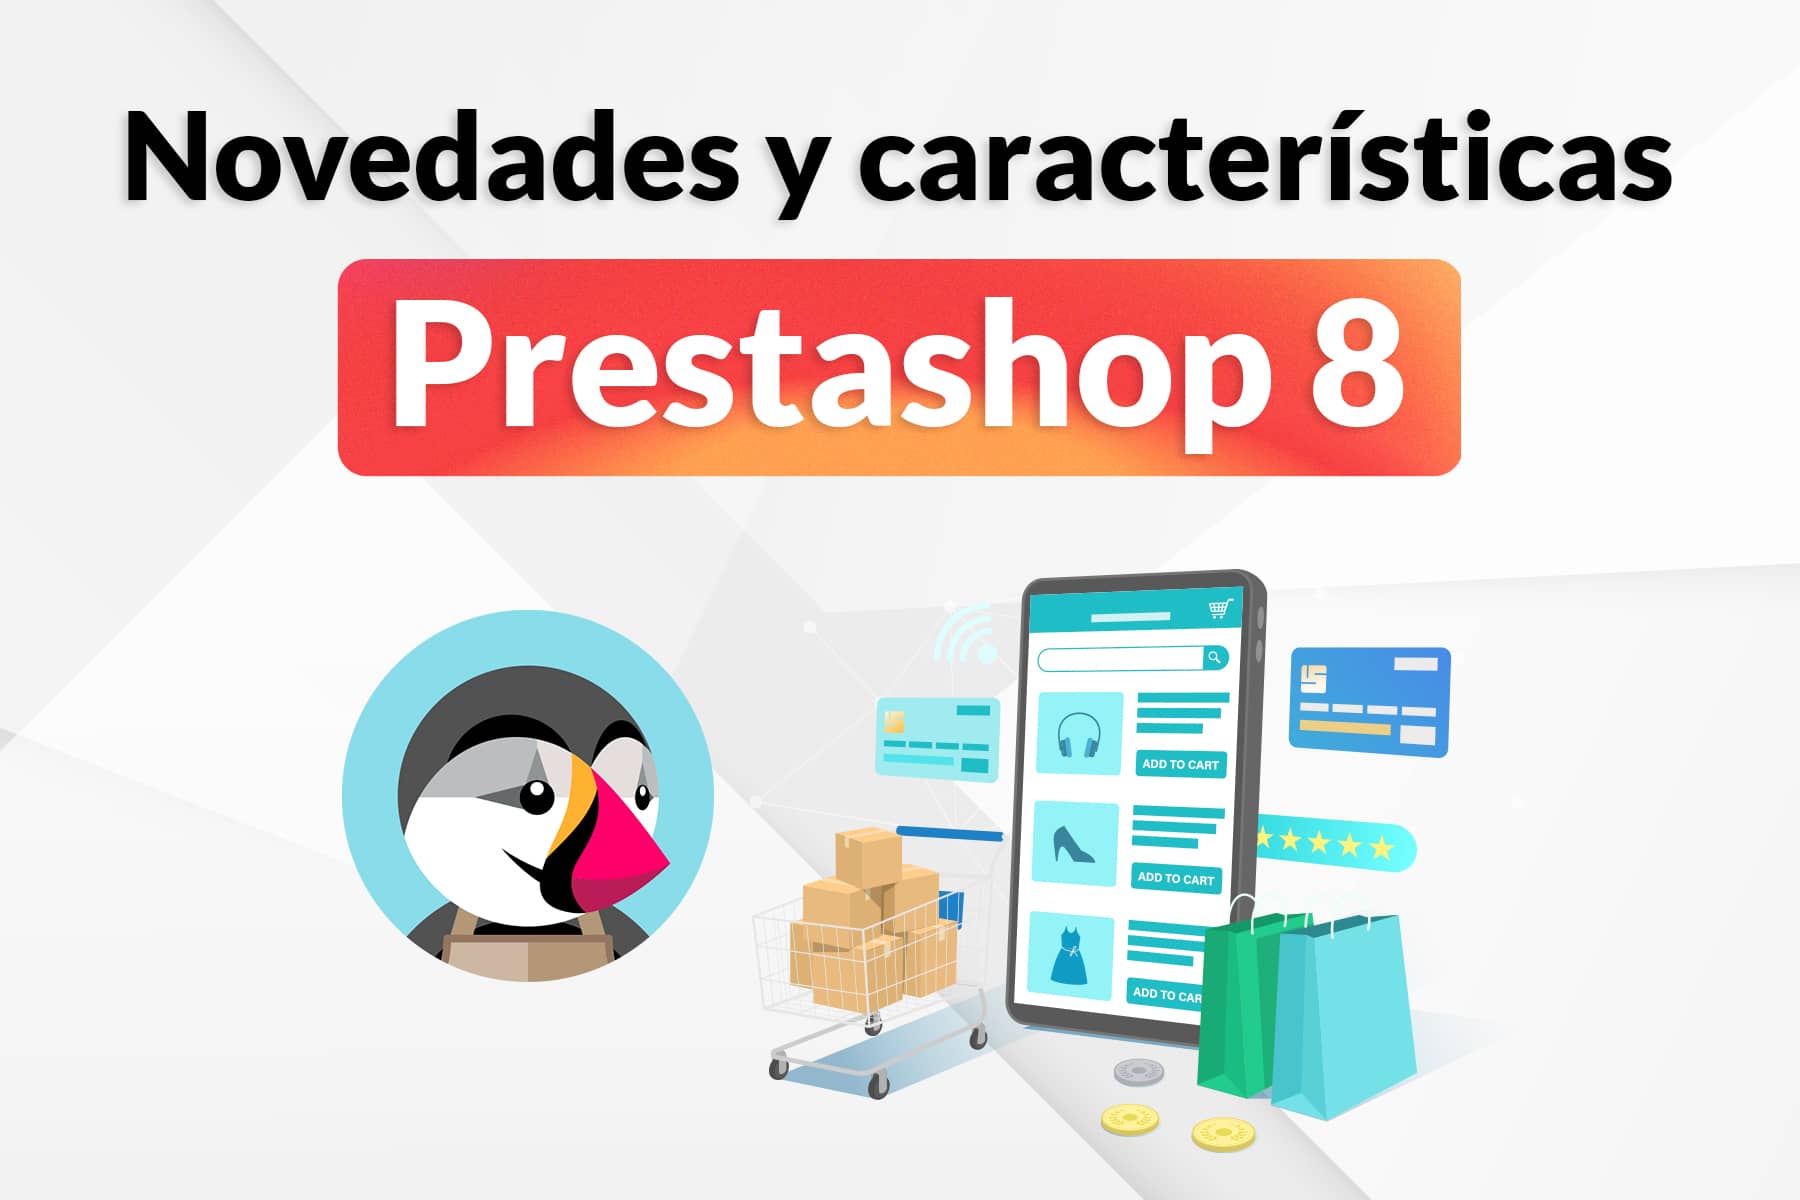 PrestaShop 8: ¿Qué novedades ofrece?